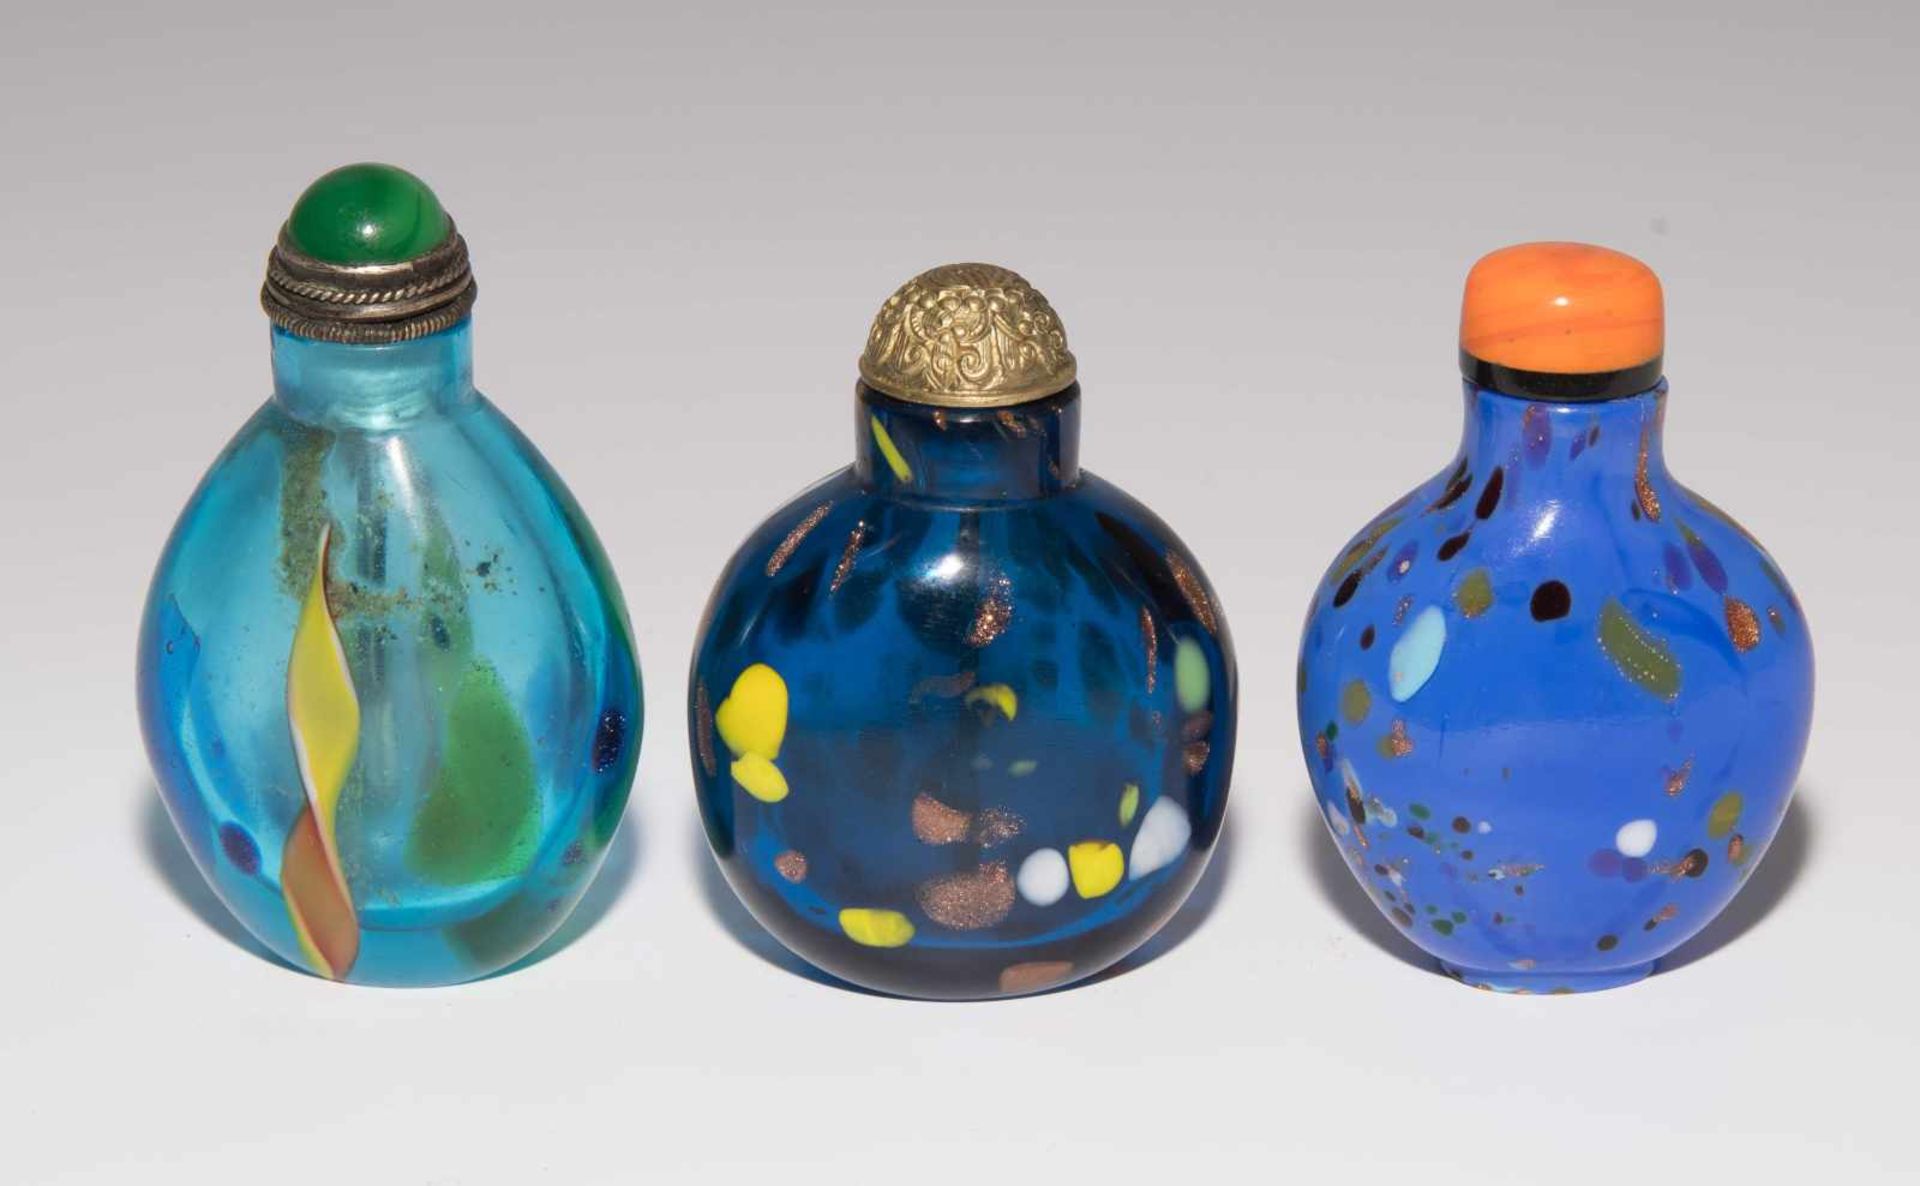 6 Glas Snuff BottlesChina. Opakes und transparentes Glas in verschiedenen Blautönen tlw. bunt - Image 3 of 15